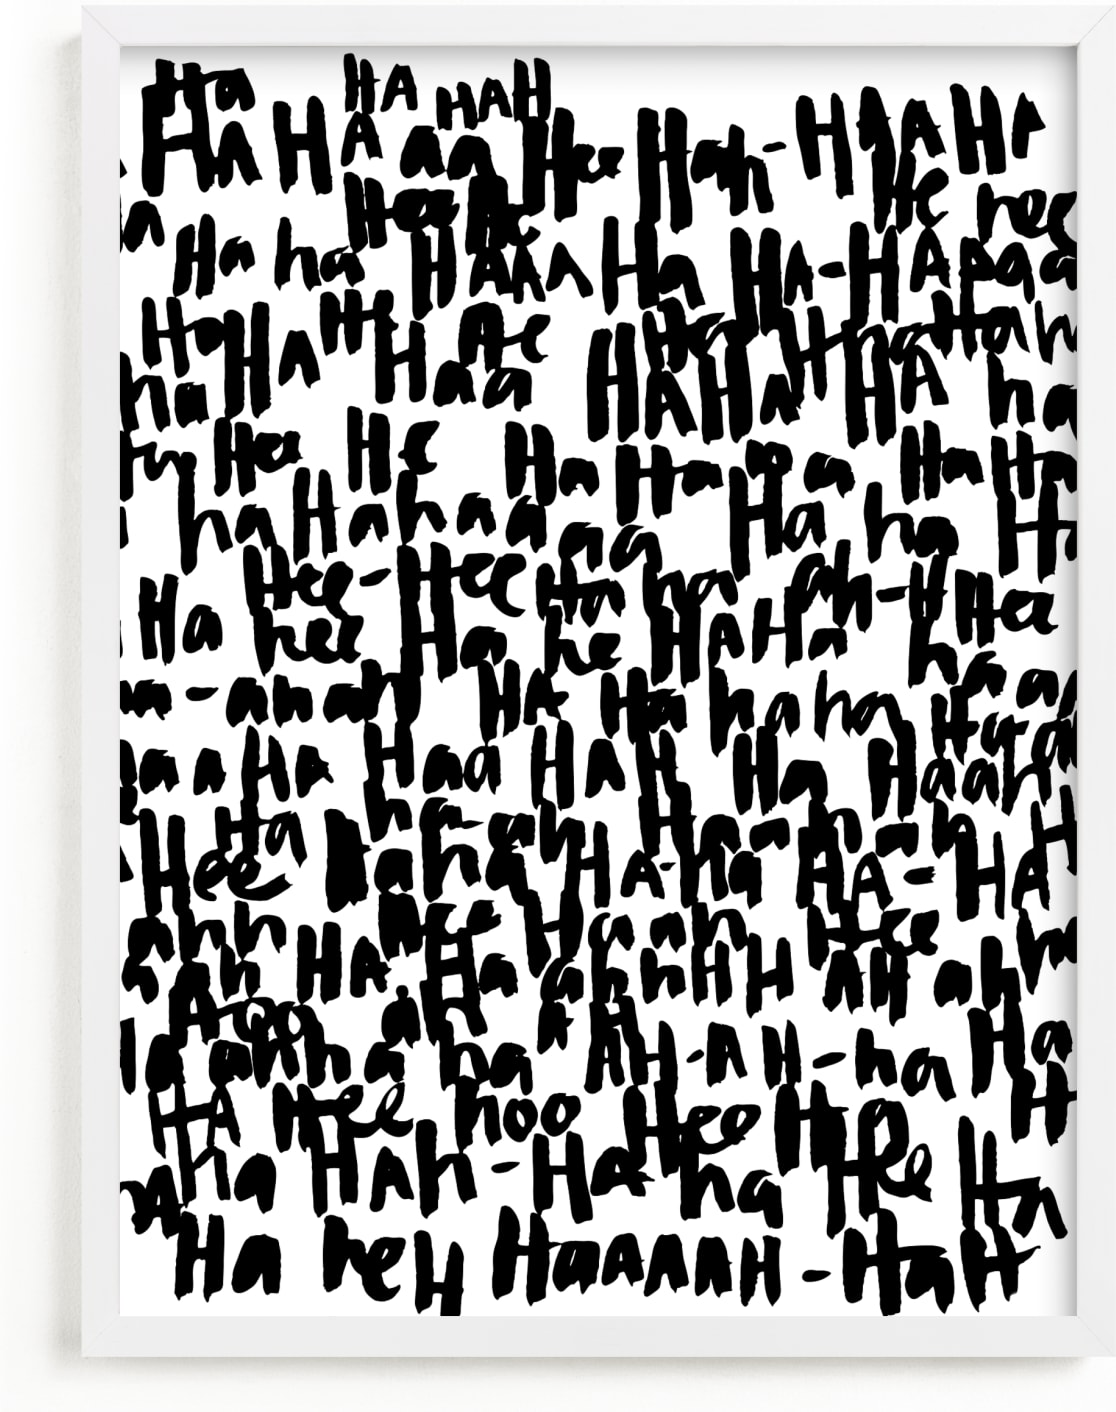 This is a black and white art by Kate Roebuck called HA-HA-HA-HA.